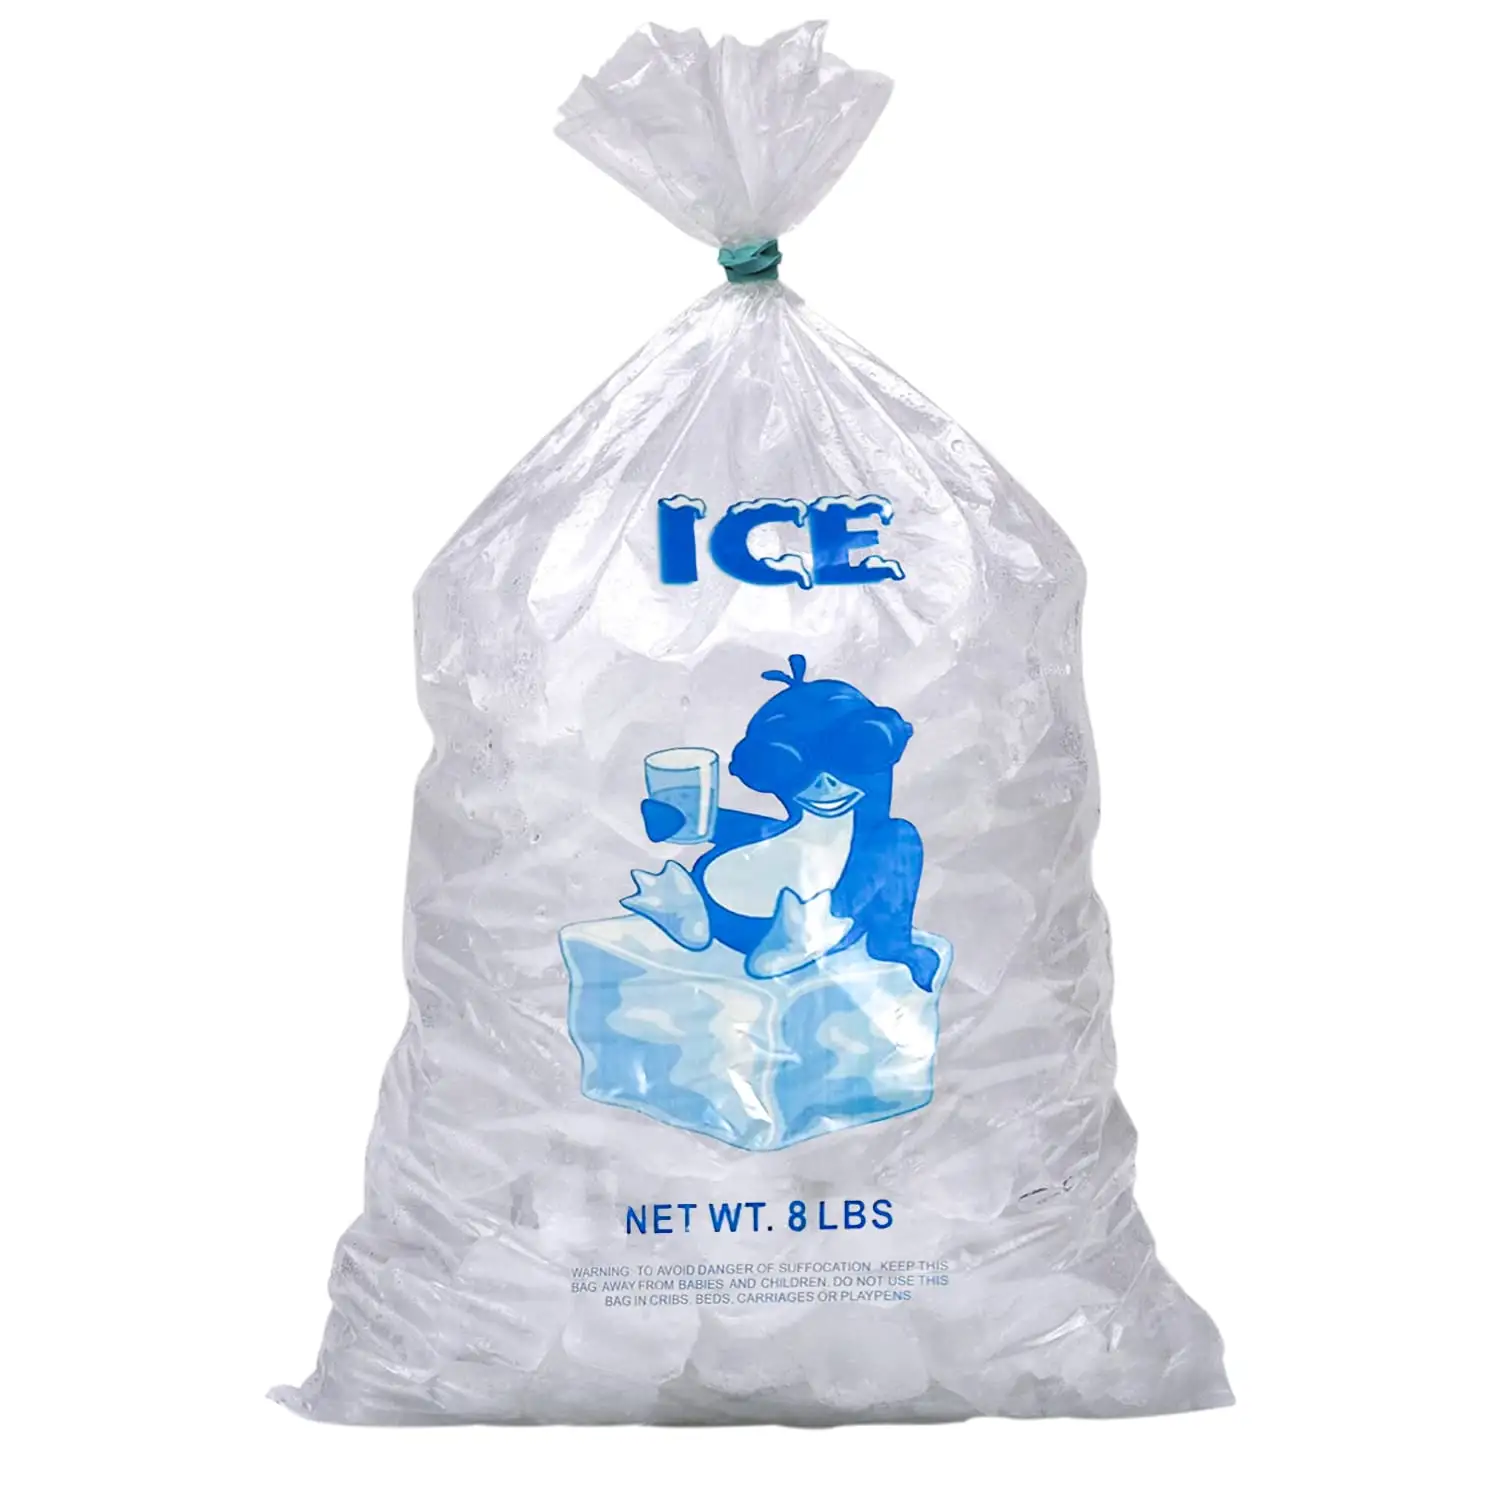 Bolsas de plástico de hielo de calidad superior vietnamita Artículo popular muy buscado con precios competitivos para un almacenamiento de hielo eficiente